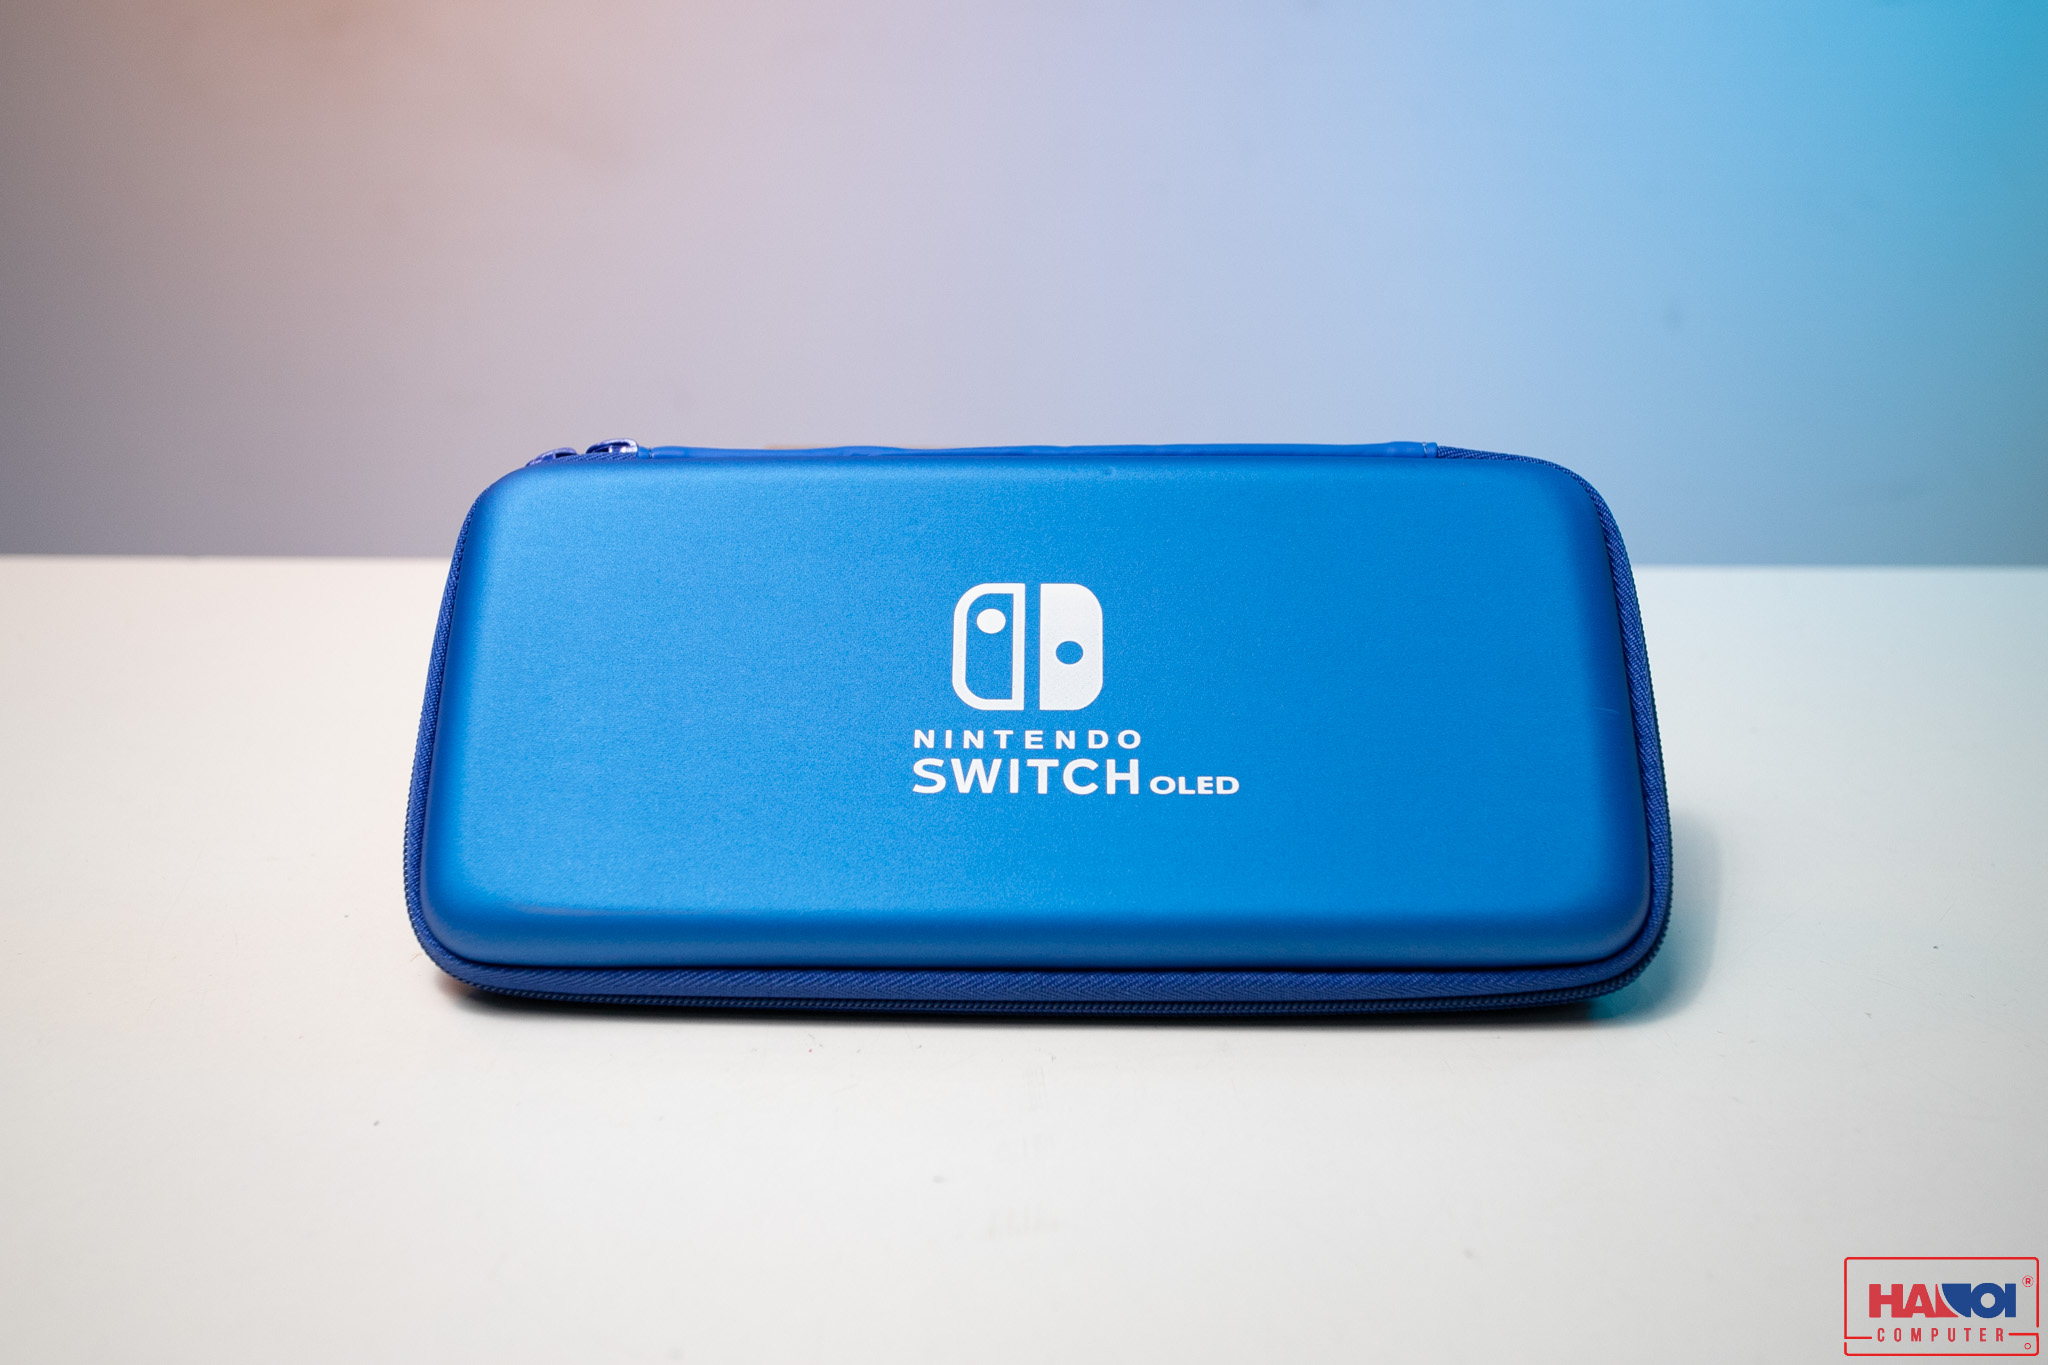 Bao cứng đựng máy Nintendo Switch NS01, màu xanh da trời 1